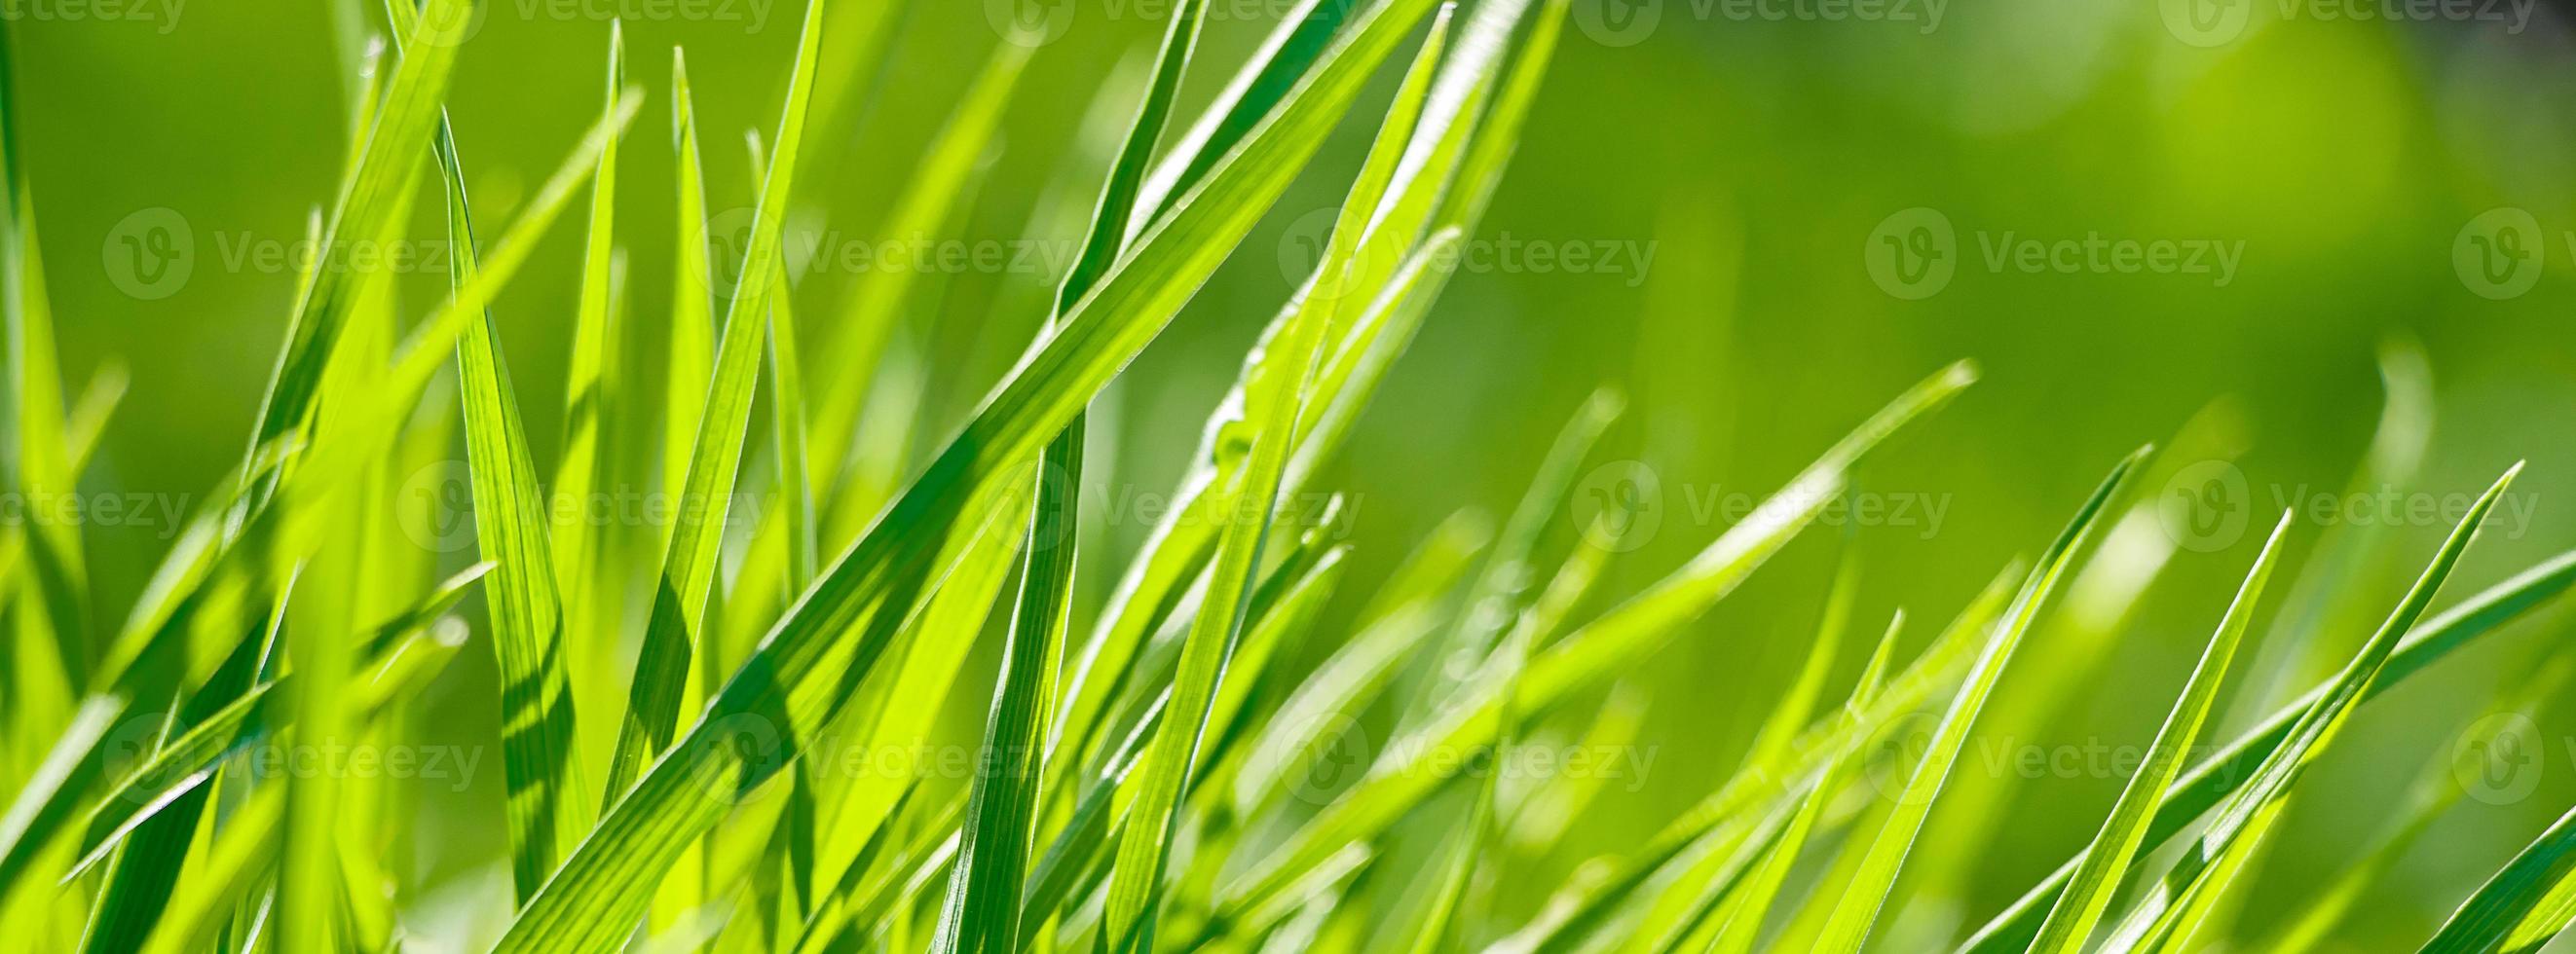 jeune herbe verte fraîche au printemps. photo